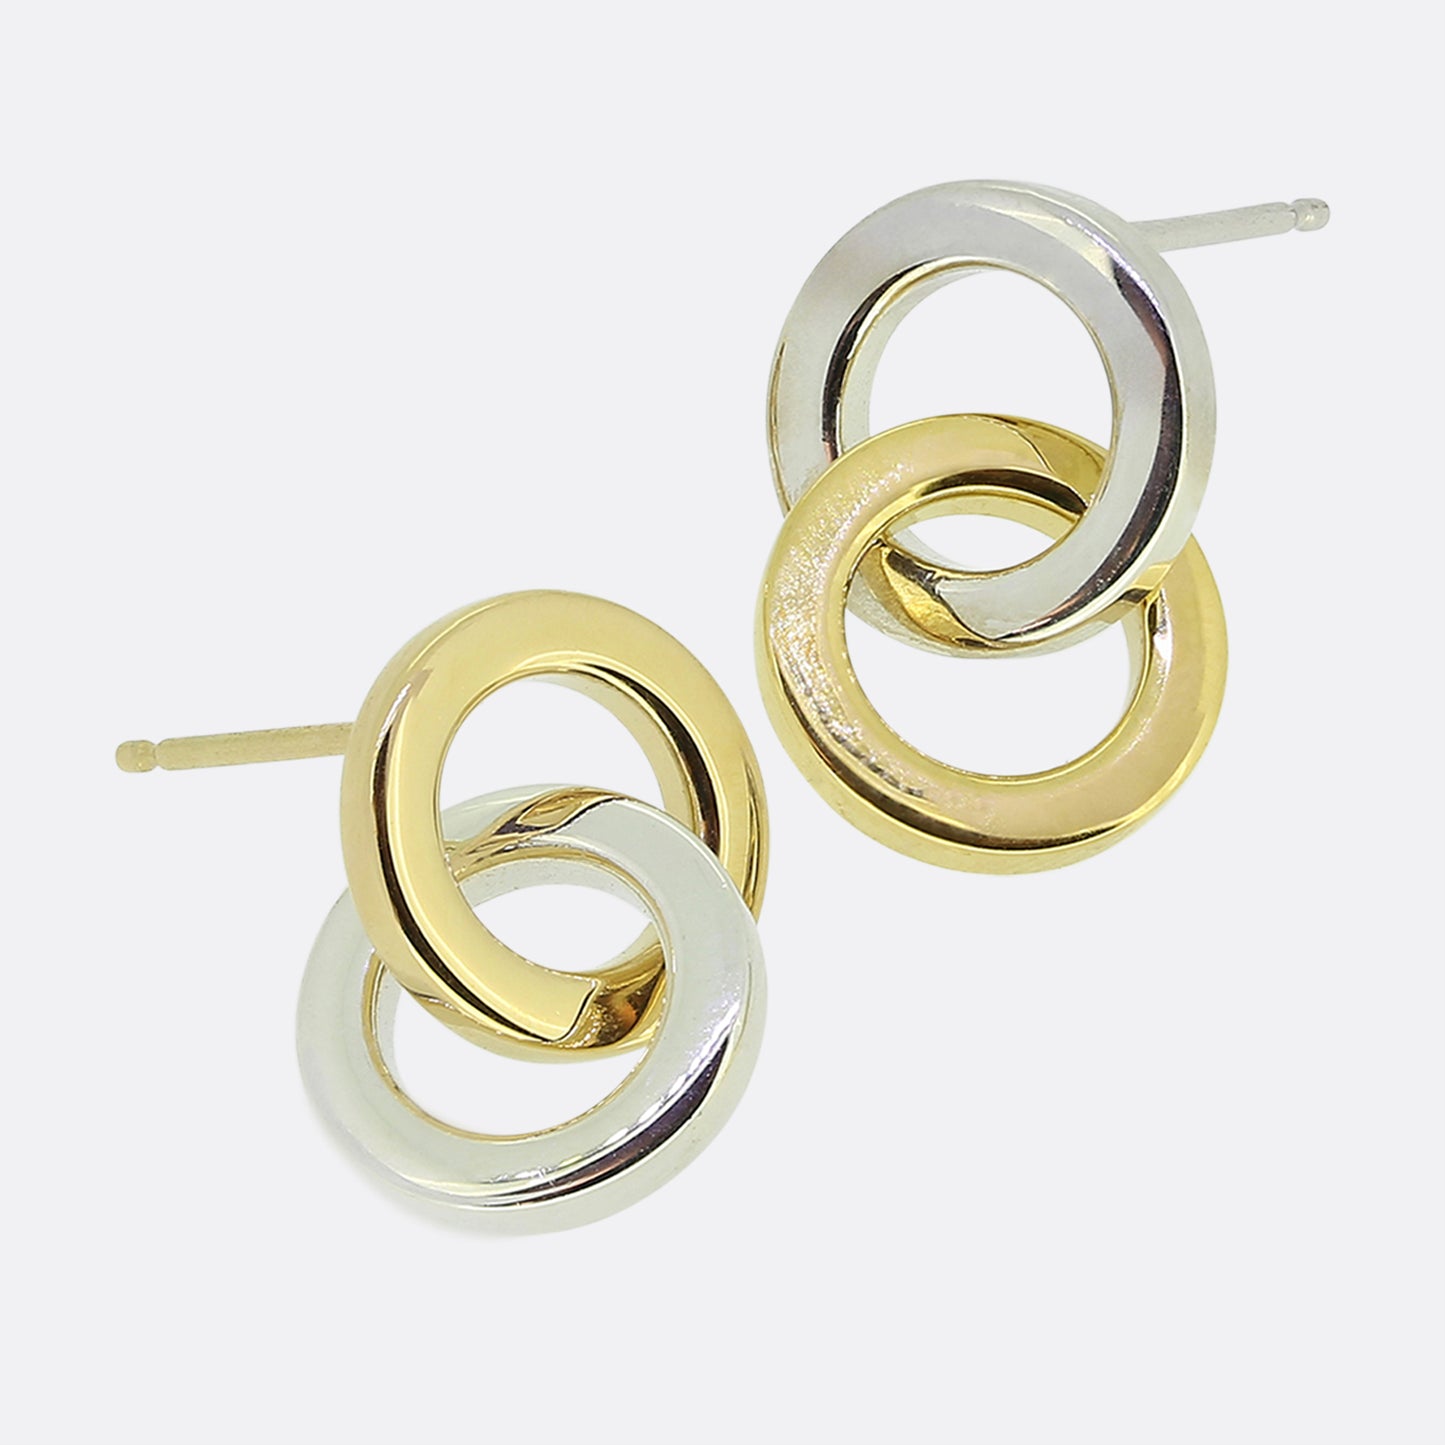 Tiffany & Co. Double Circle Earrings